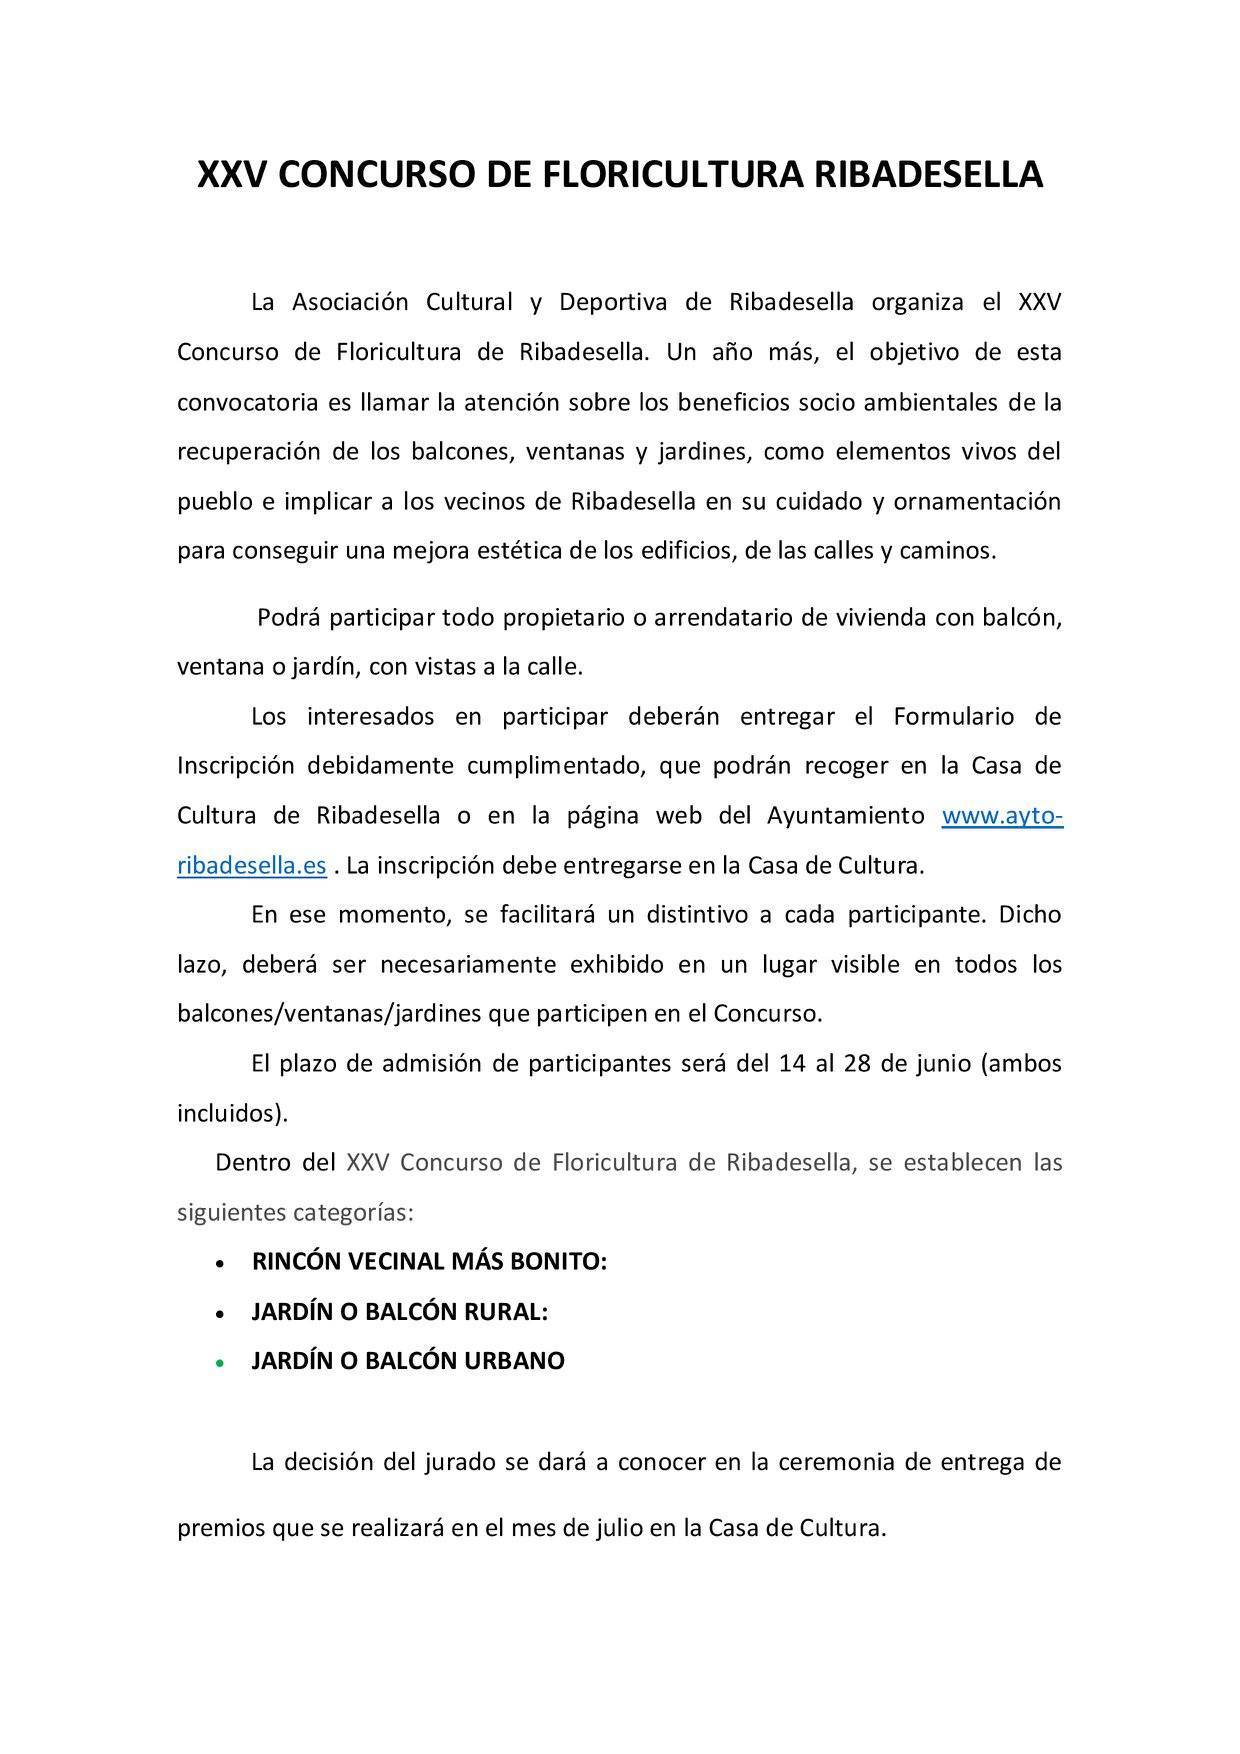 XXV concurso de floricultura - Ribadesella (Asturias) 2